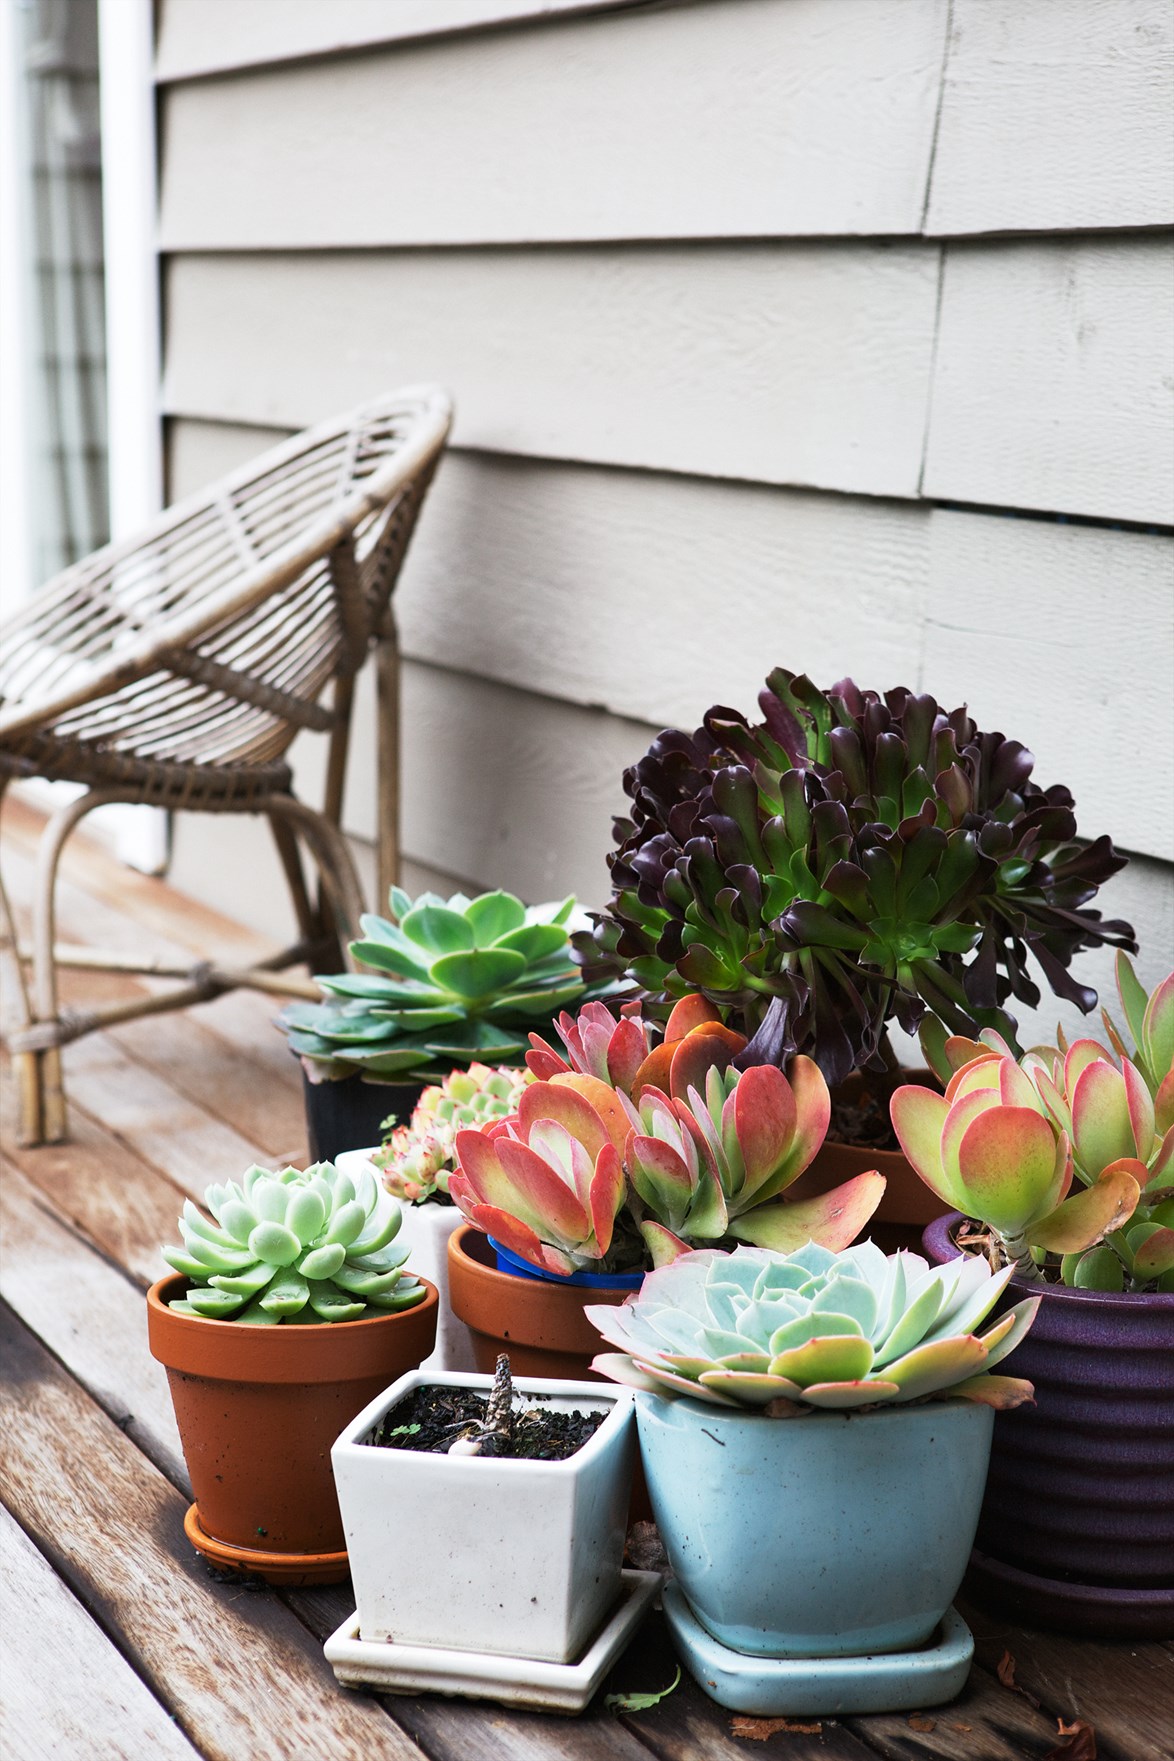 6 ý tưởng giúp khu vườn nhỏ trong nhà bạn luôn là tâm điểm chú ý - Ảnh 4.